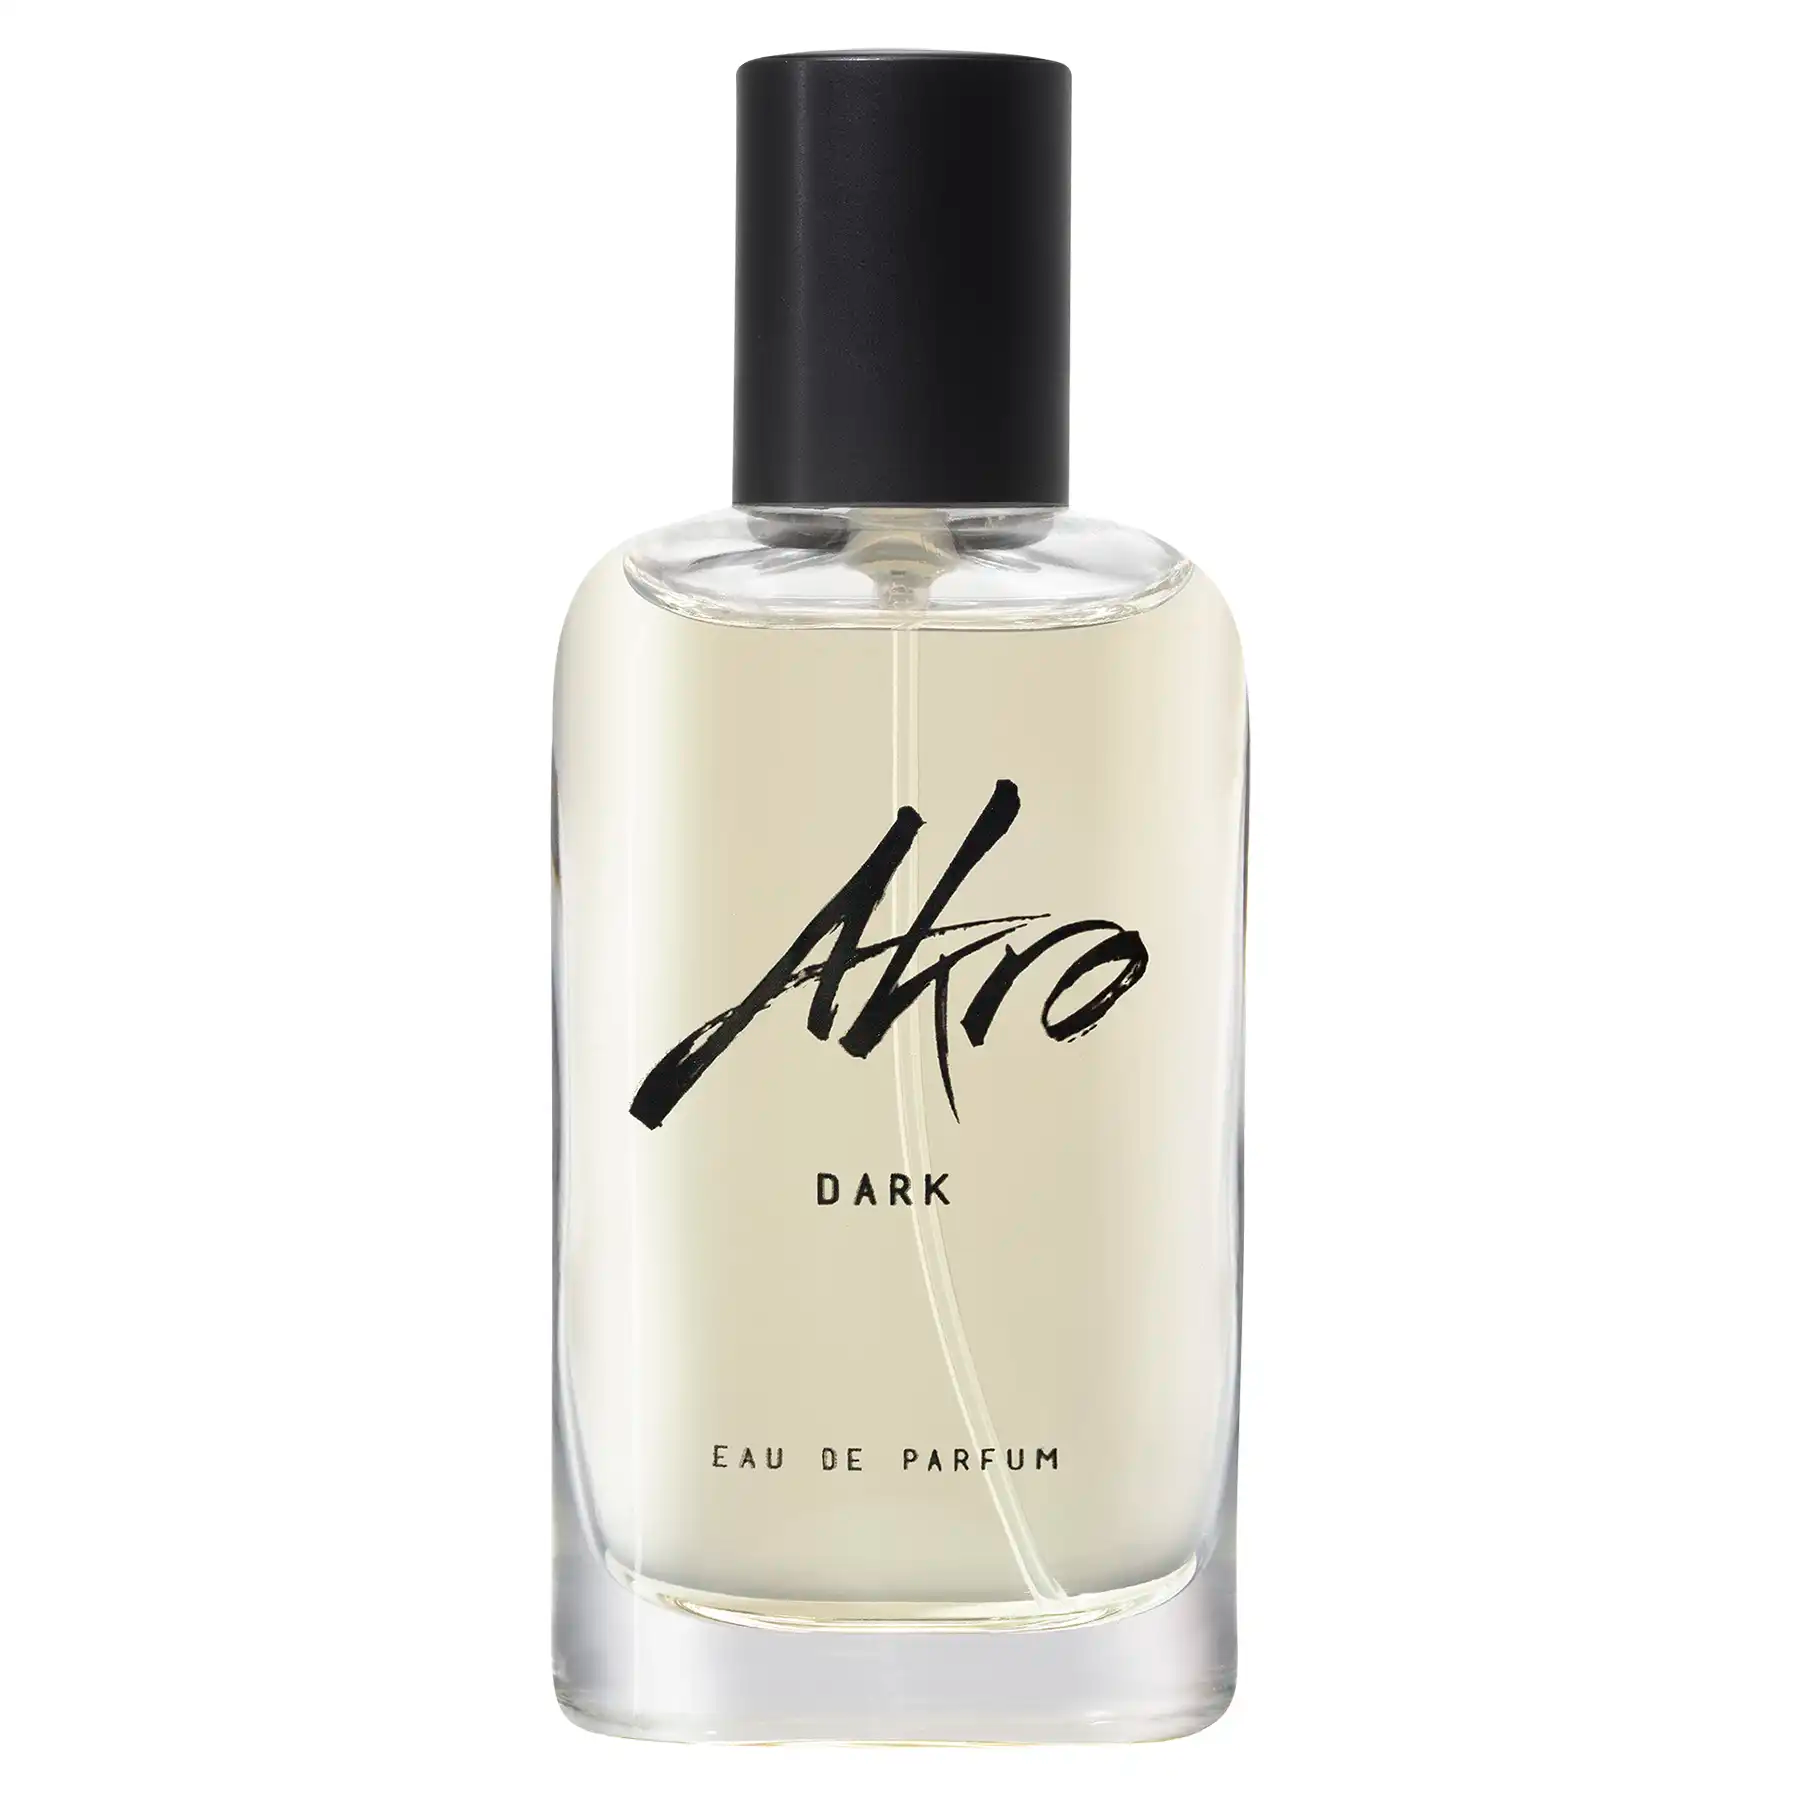 Akro Dark Eau de Parfum 30ml